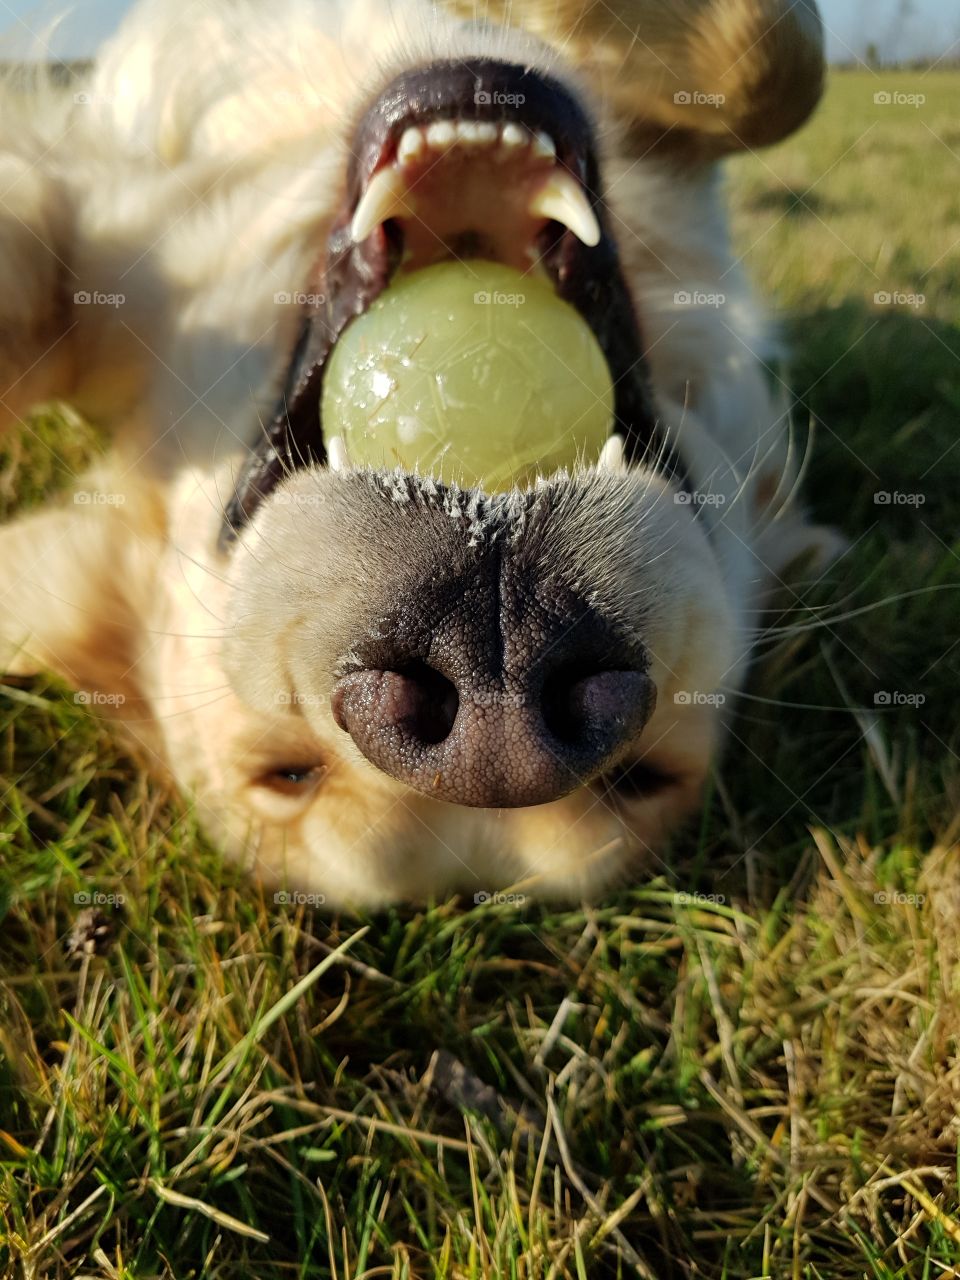 I've got the ball!